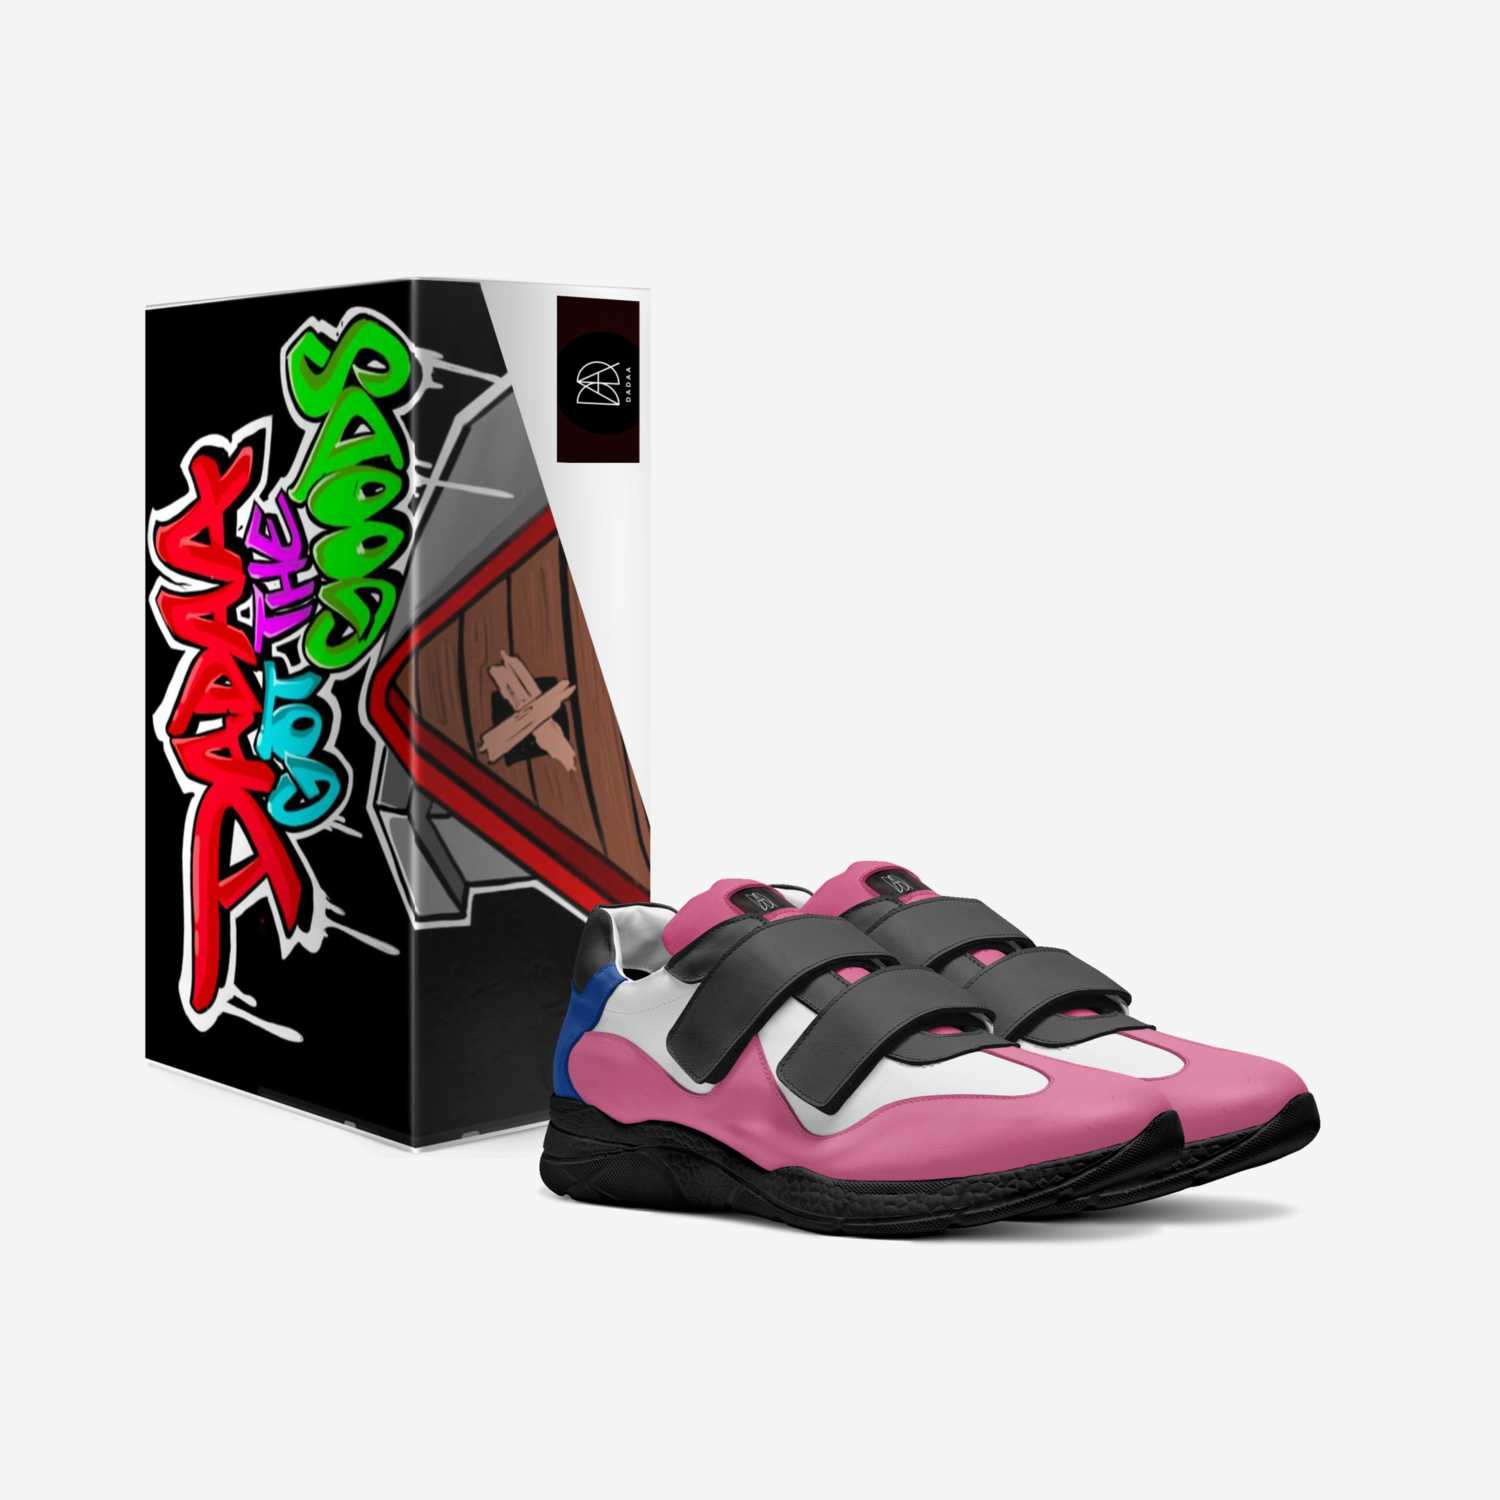 Dadaa custom made in Italy shoes by Dadaa Dadaa | Box view